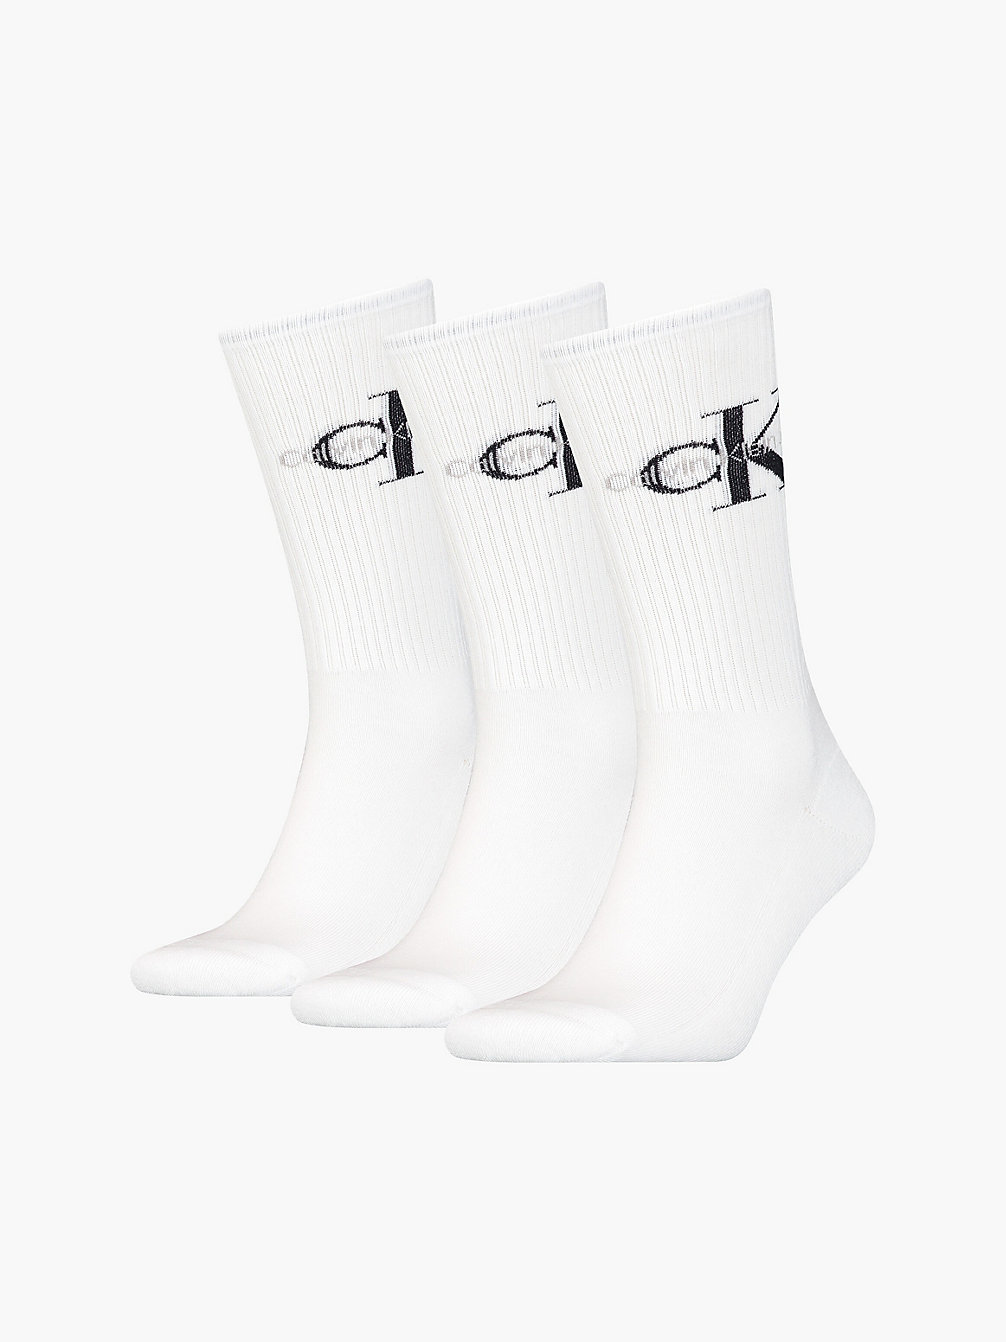 WHITE 3 Pack Crew Socks undefined men Calvin Klein